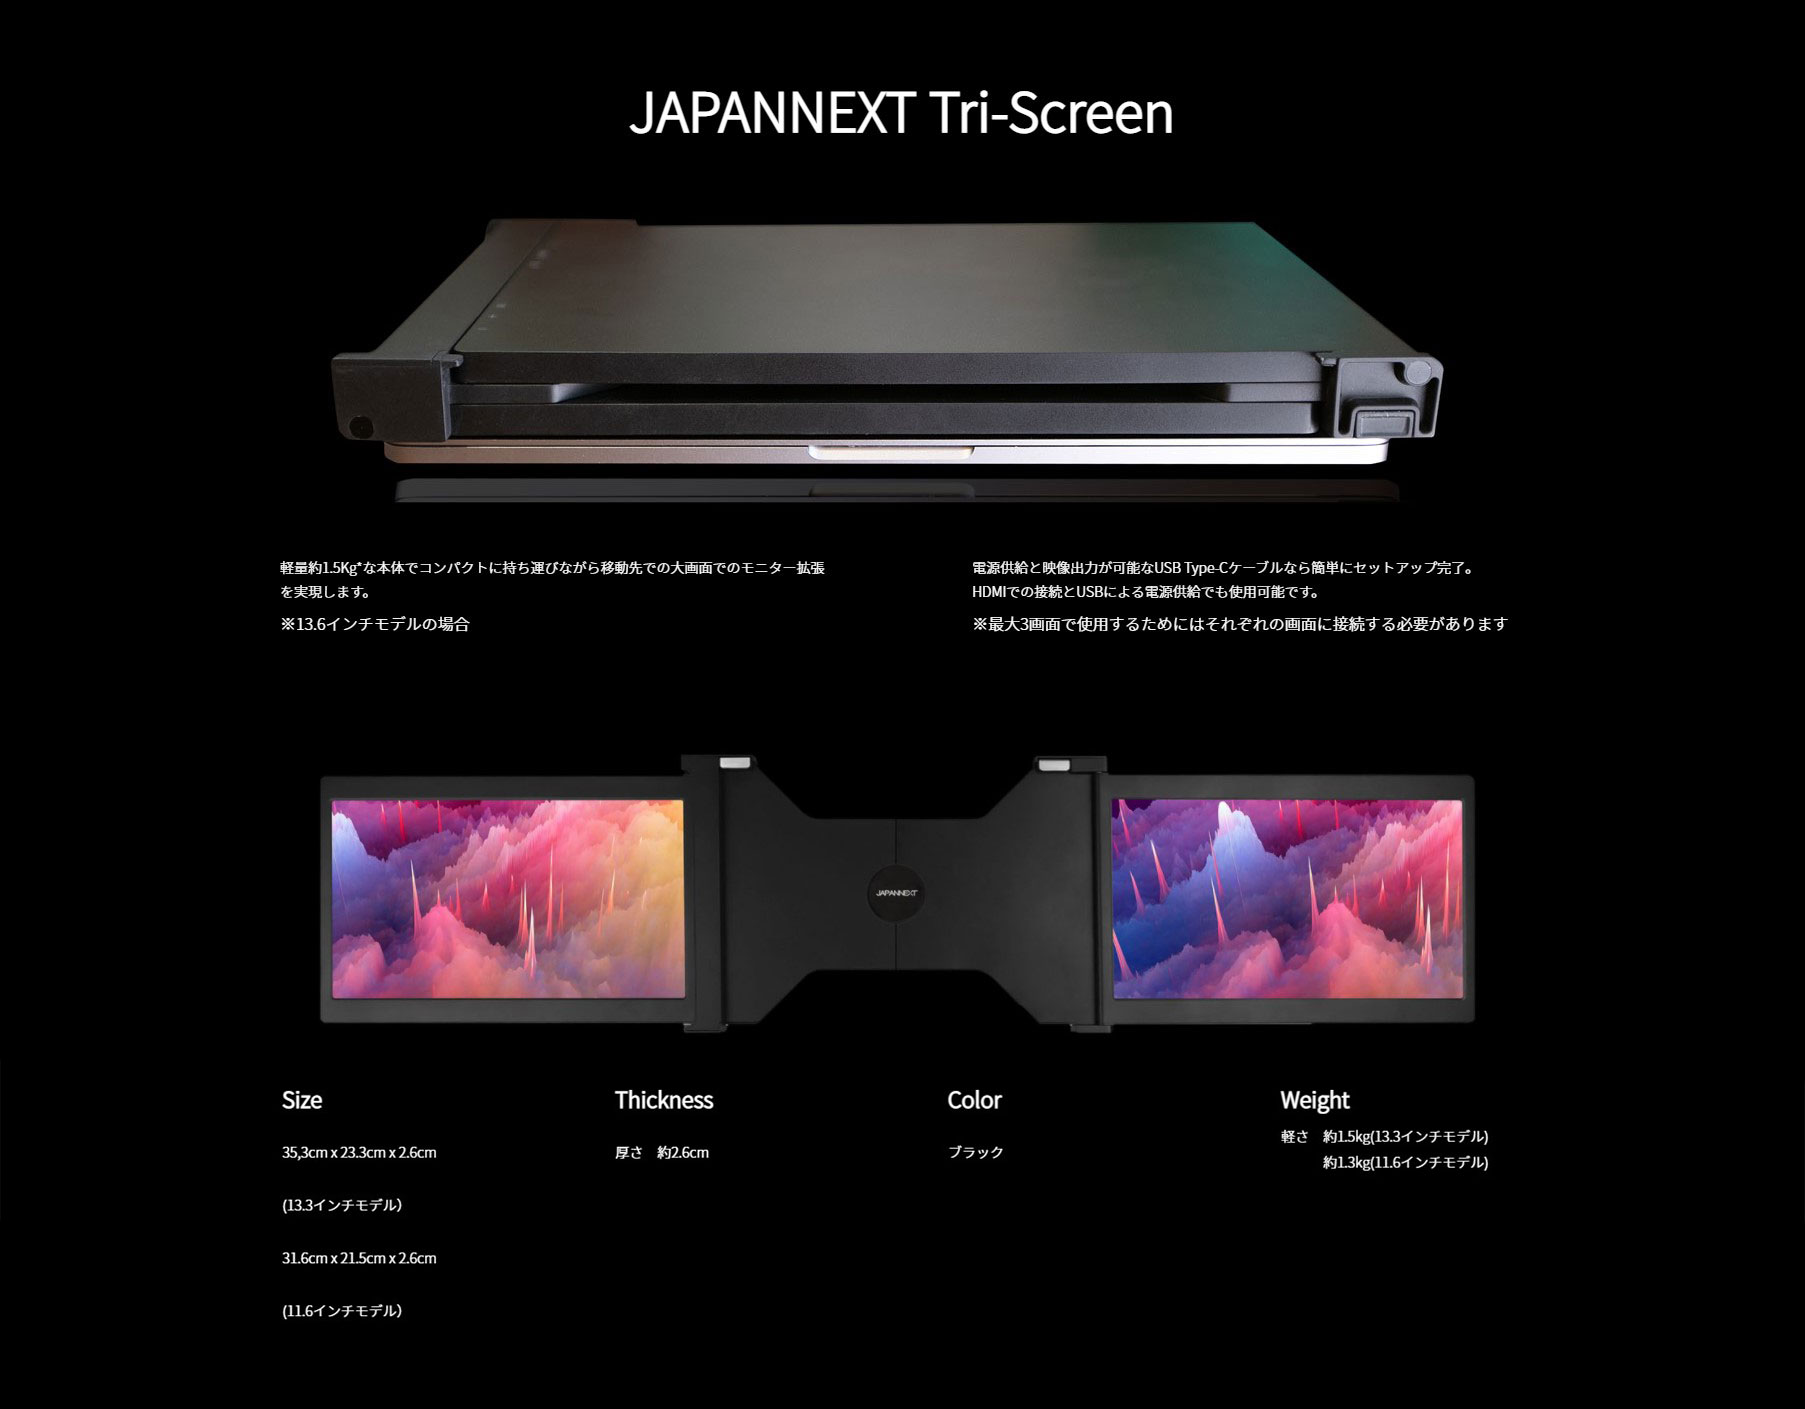 マルチディスプレイモバイルモニター “Tri-Screen”-japannext